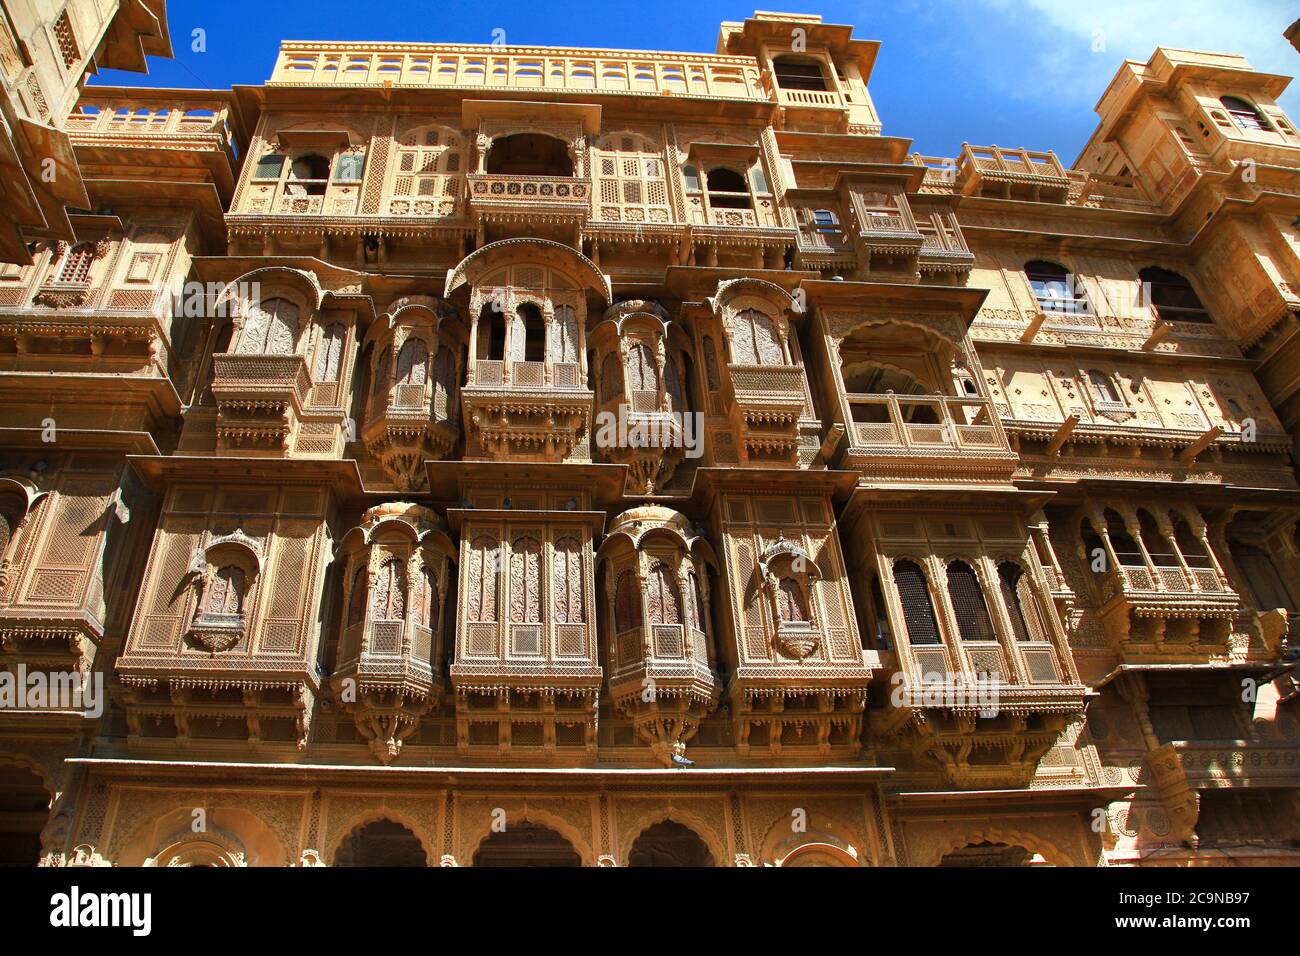 Ciudad de oro de la India - maravilloso Jaisalmer con edificios tradicionales tallados en estilo Mughal. Rajastán Foto de stock